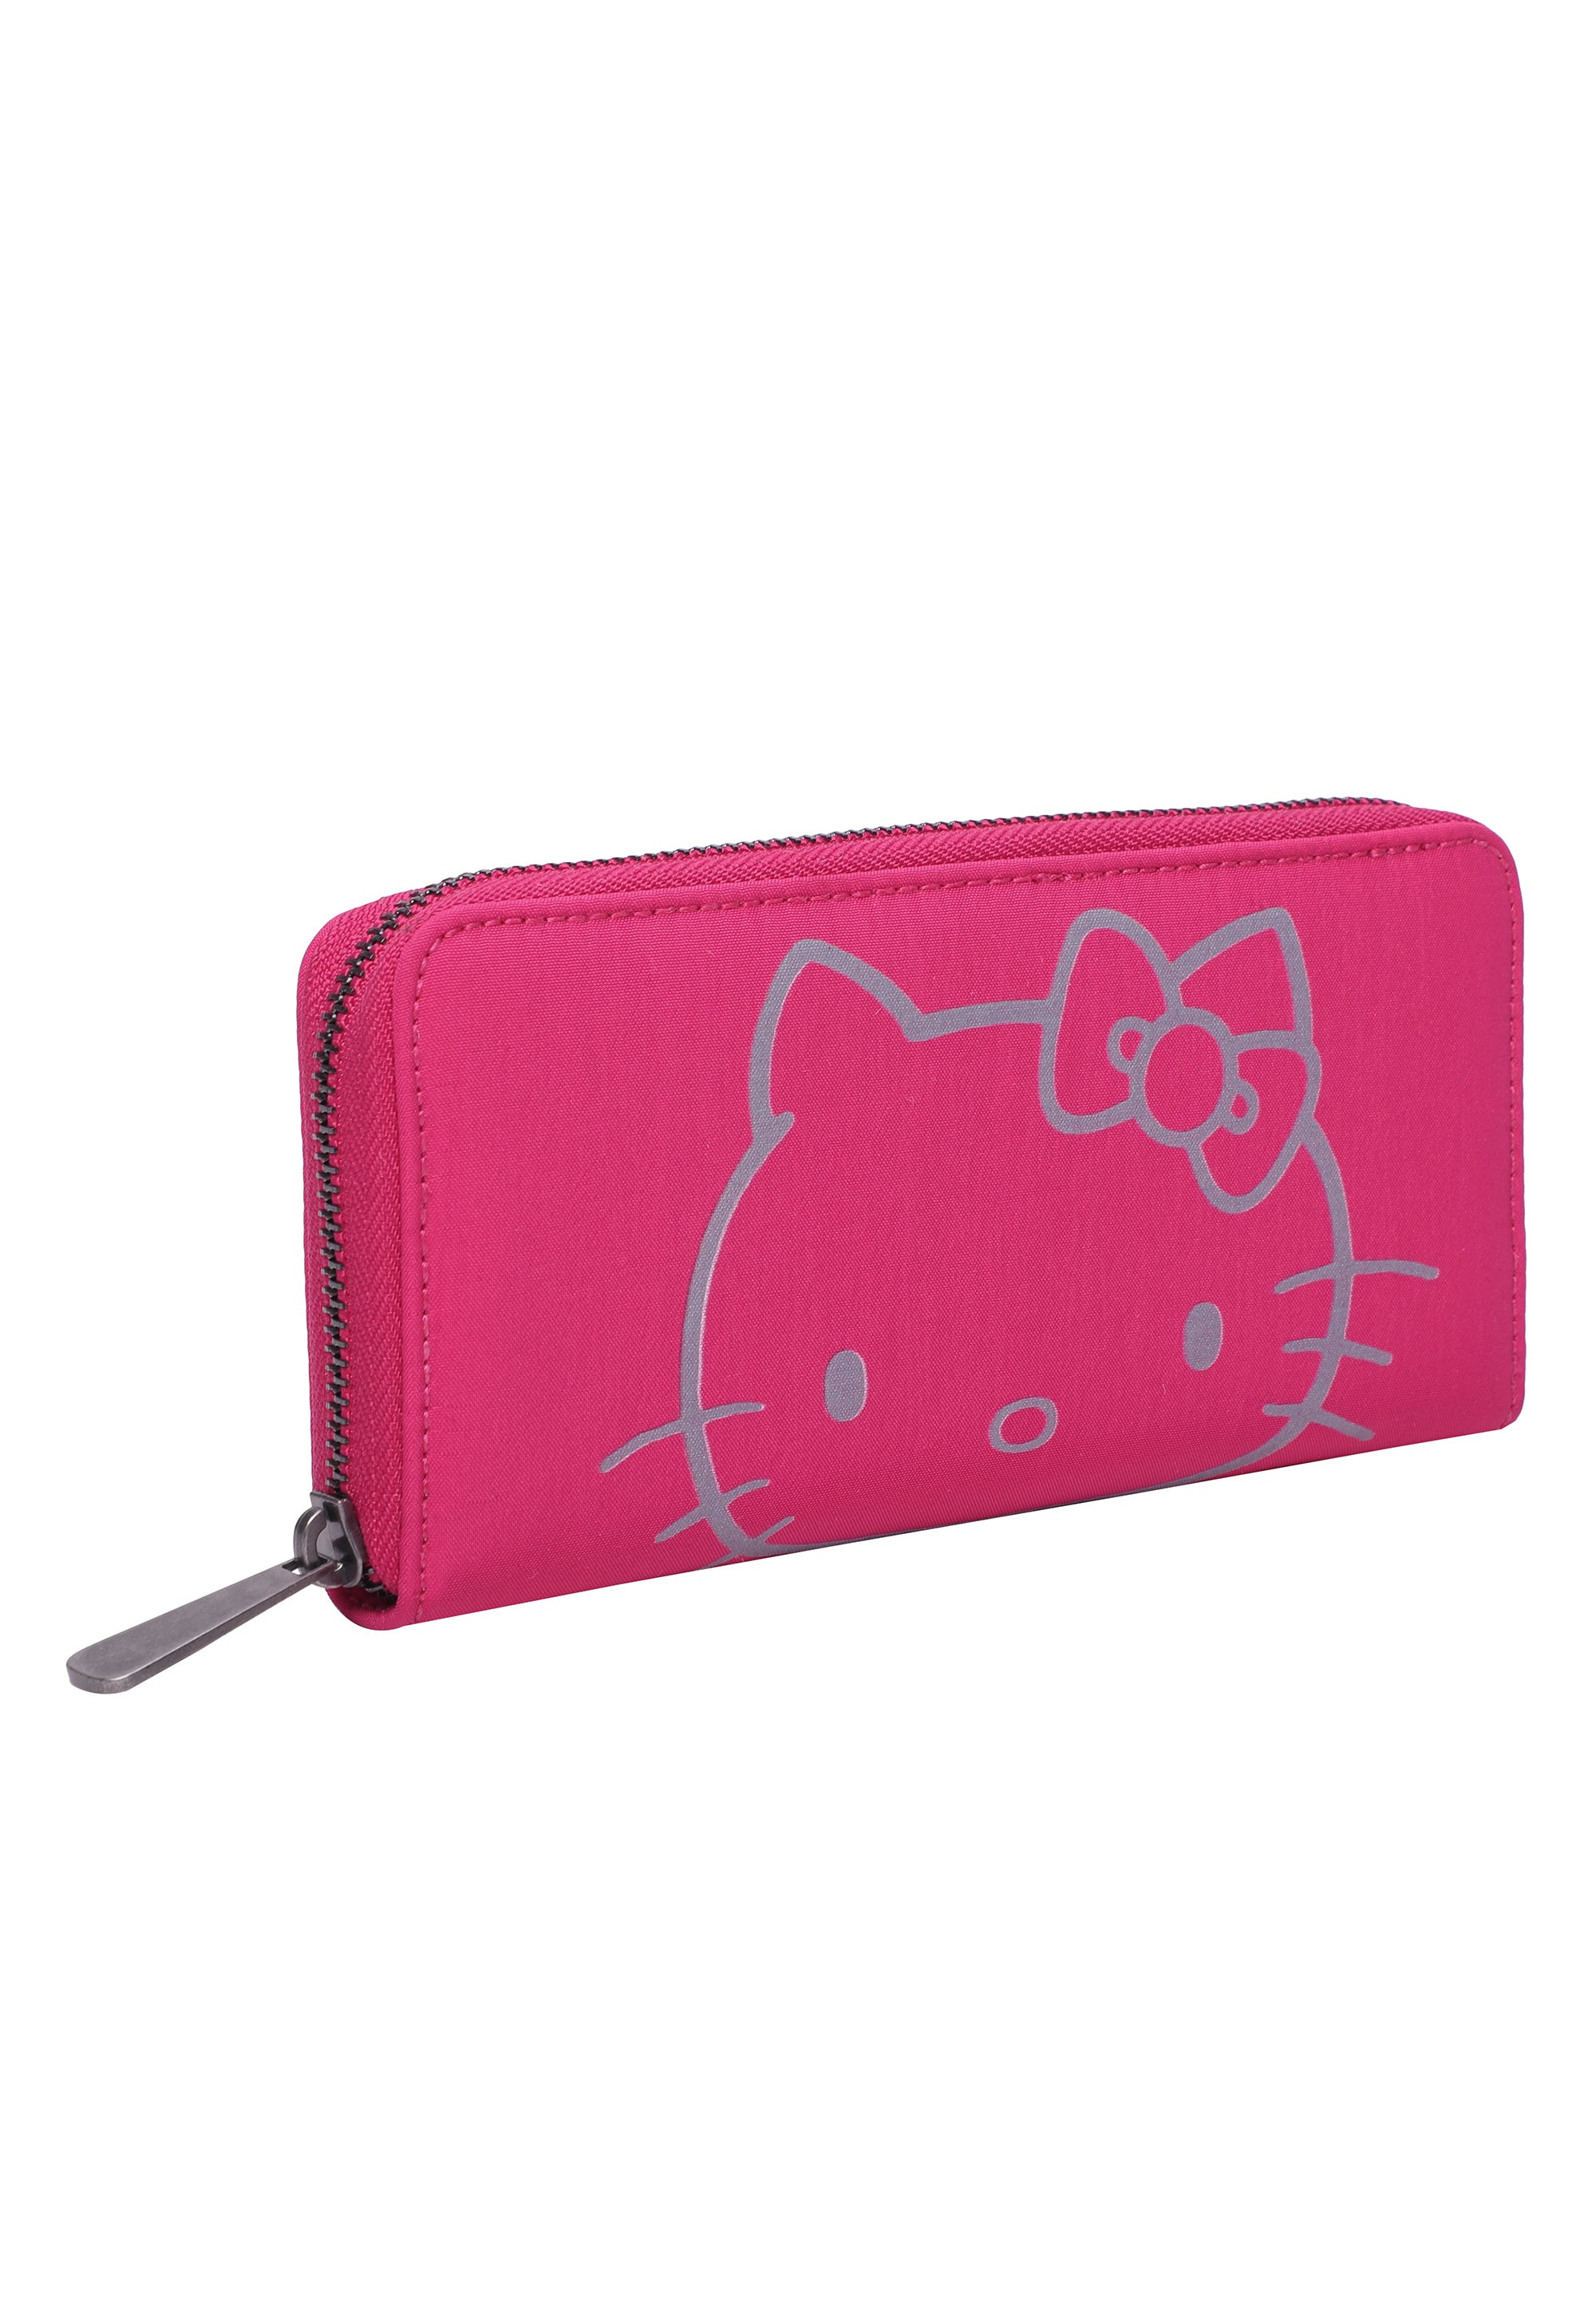 Hello Kitty fritzi Wallet Nicole Sky